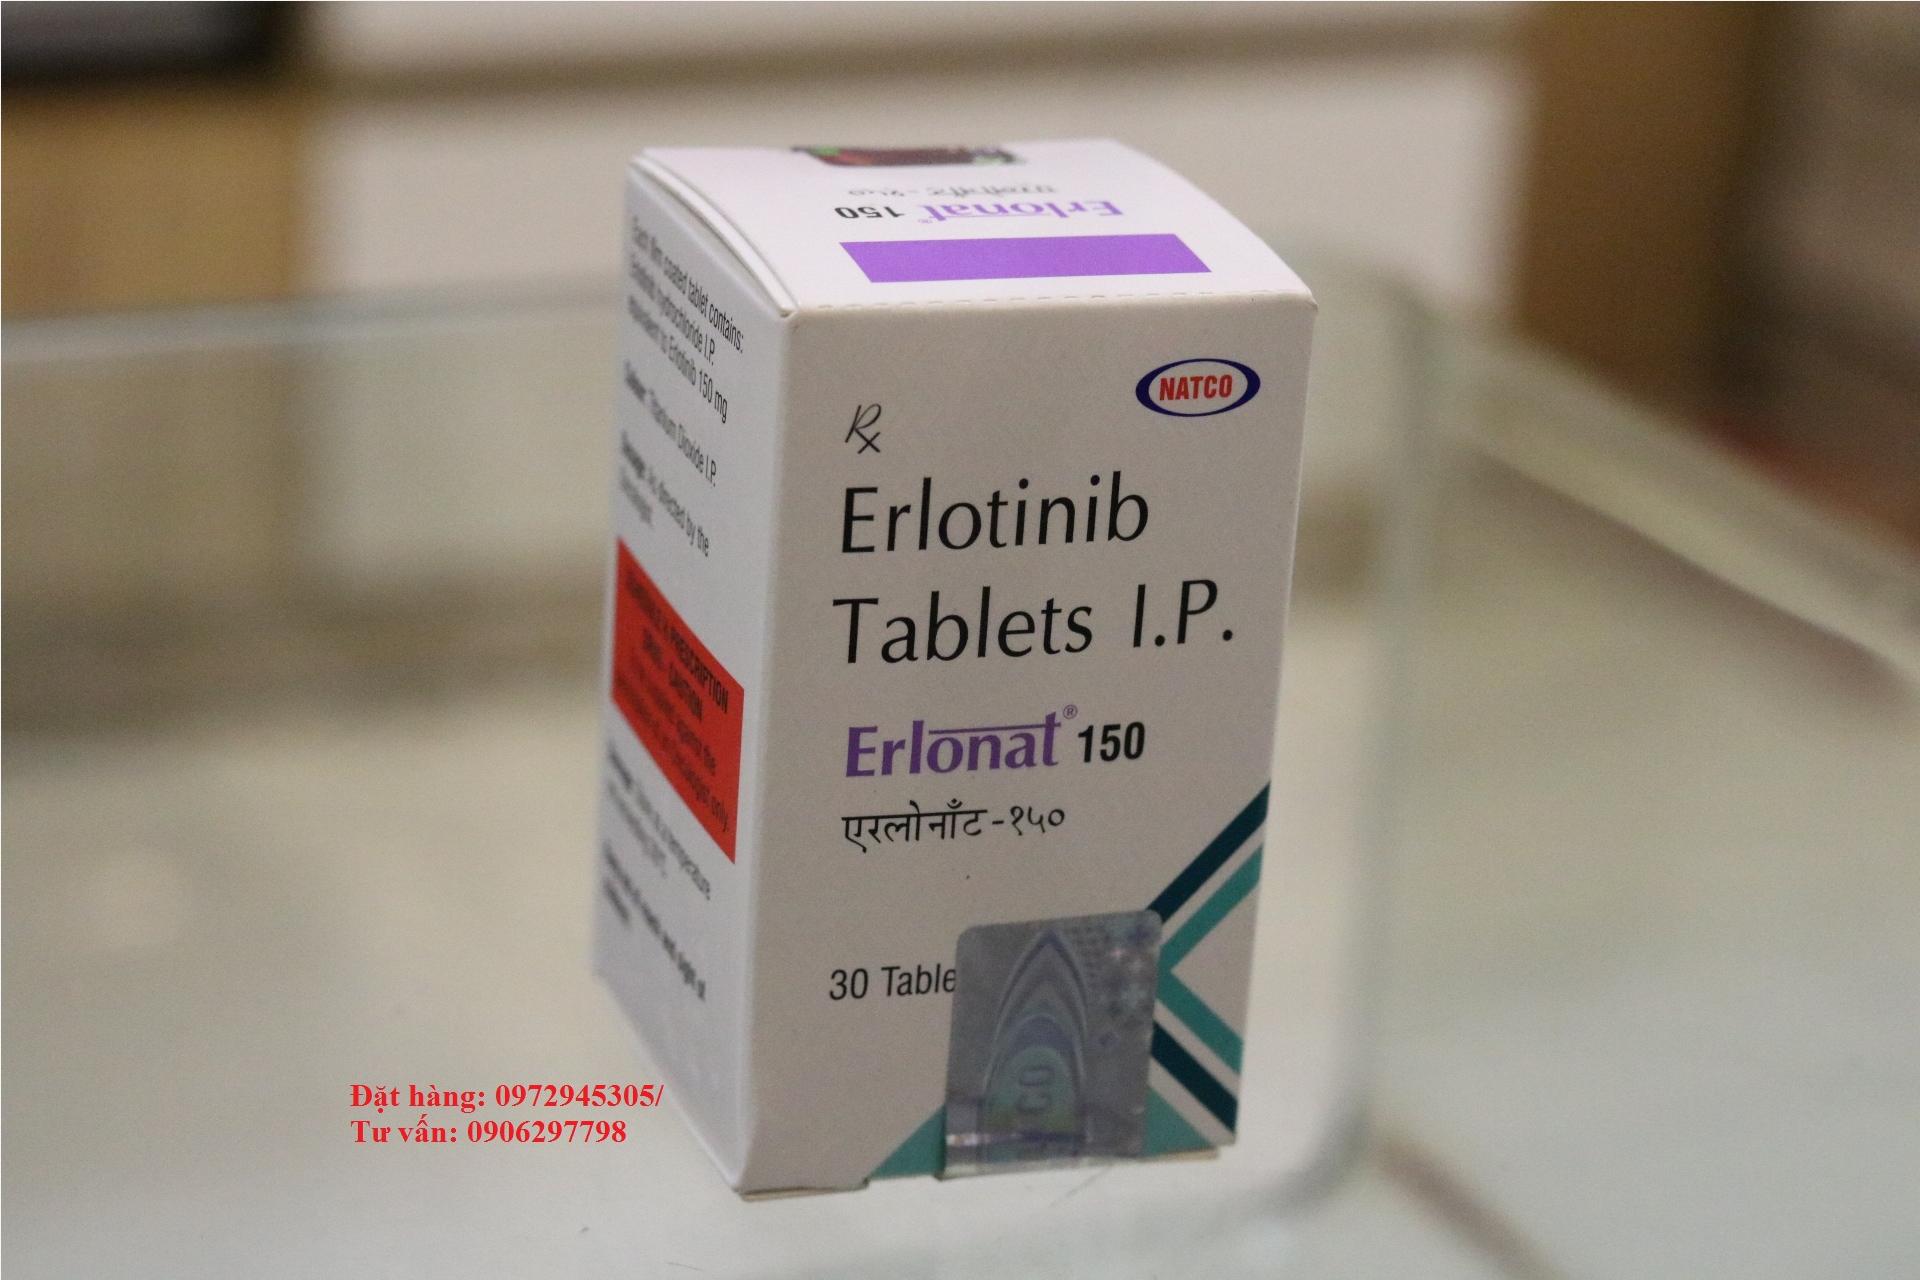 Thuốc Erlonat 150 mua ở đâu, thuốc Erlonat giá bao nhiêu?